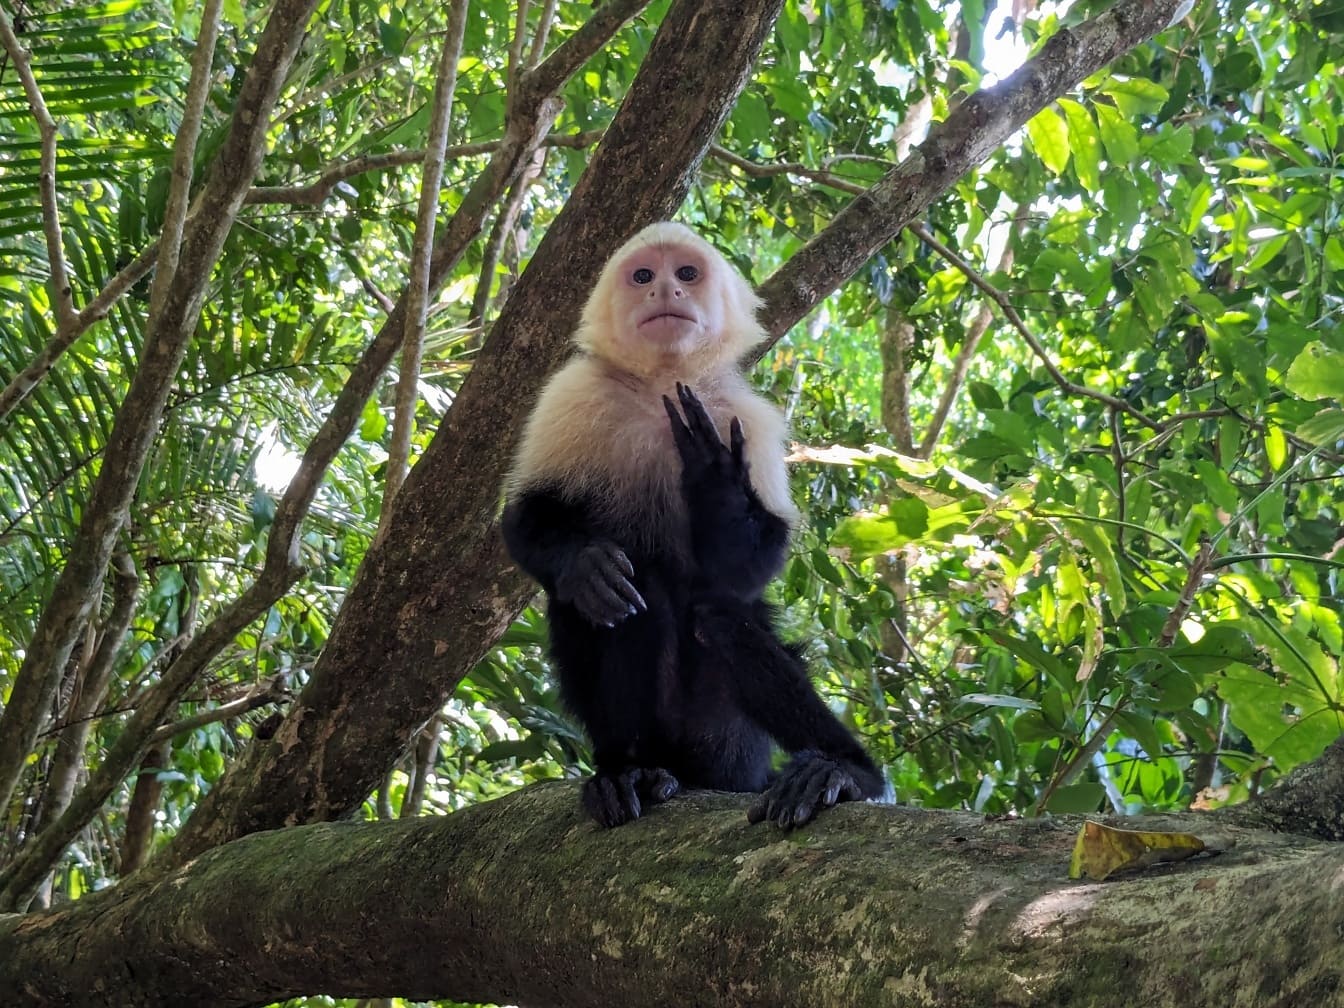 Panamese kapucijnaap met wit gezicht (Cebus imitator) aapzitting op een boomtak